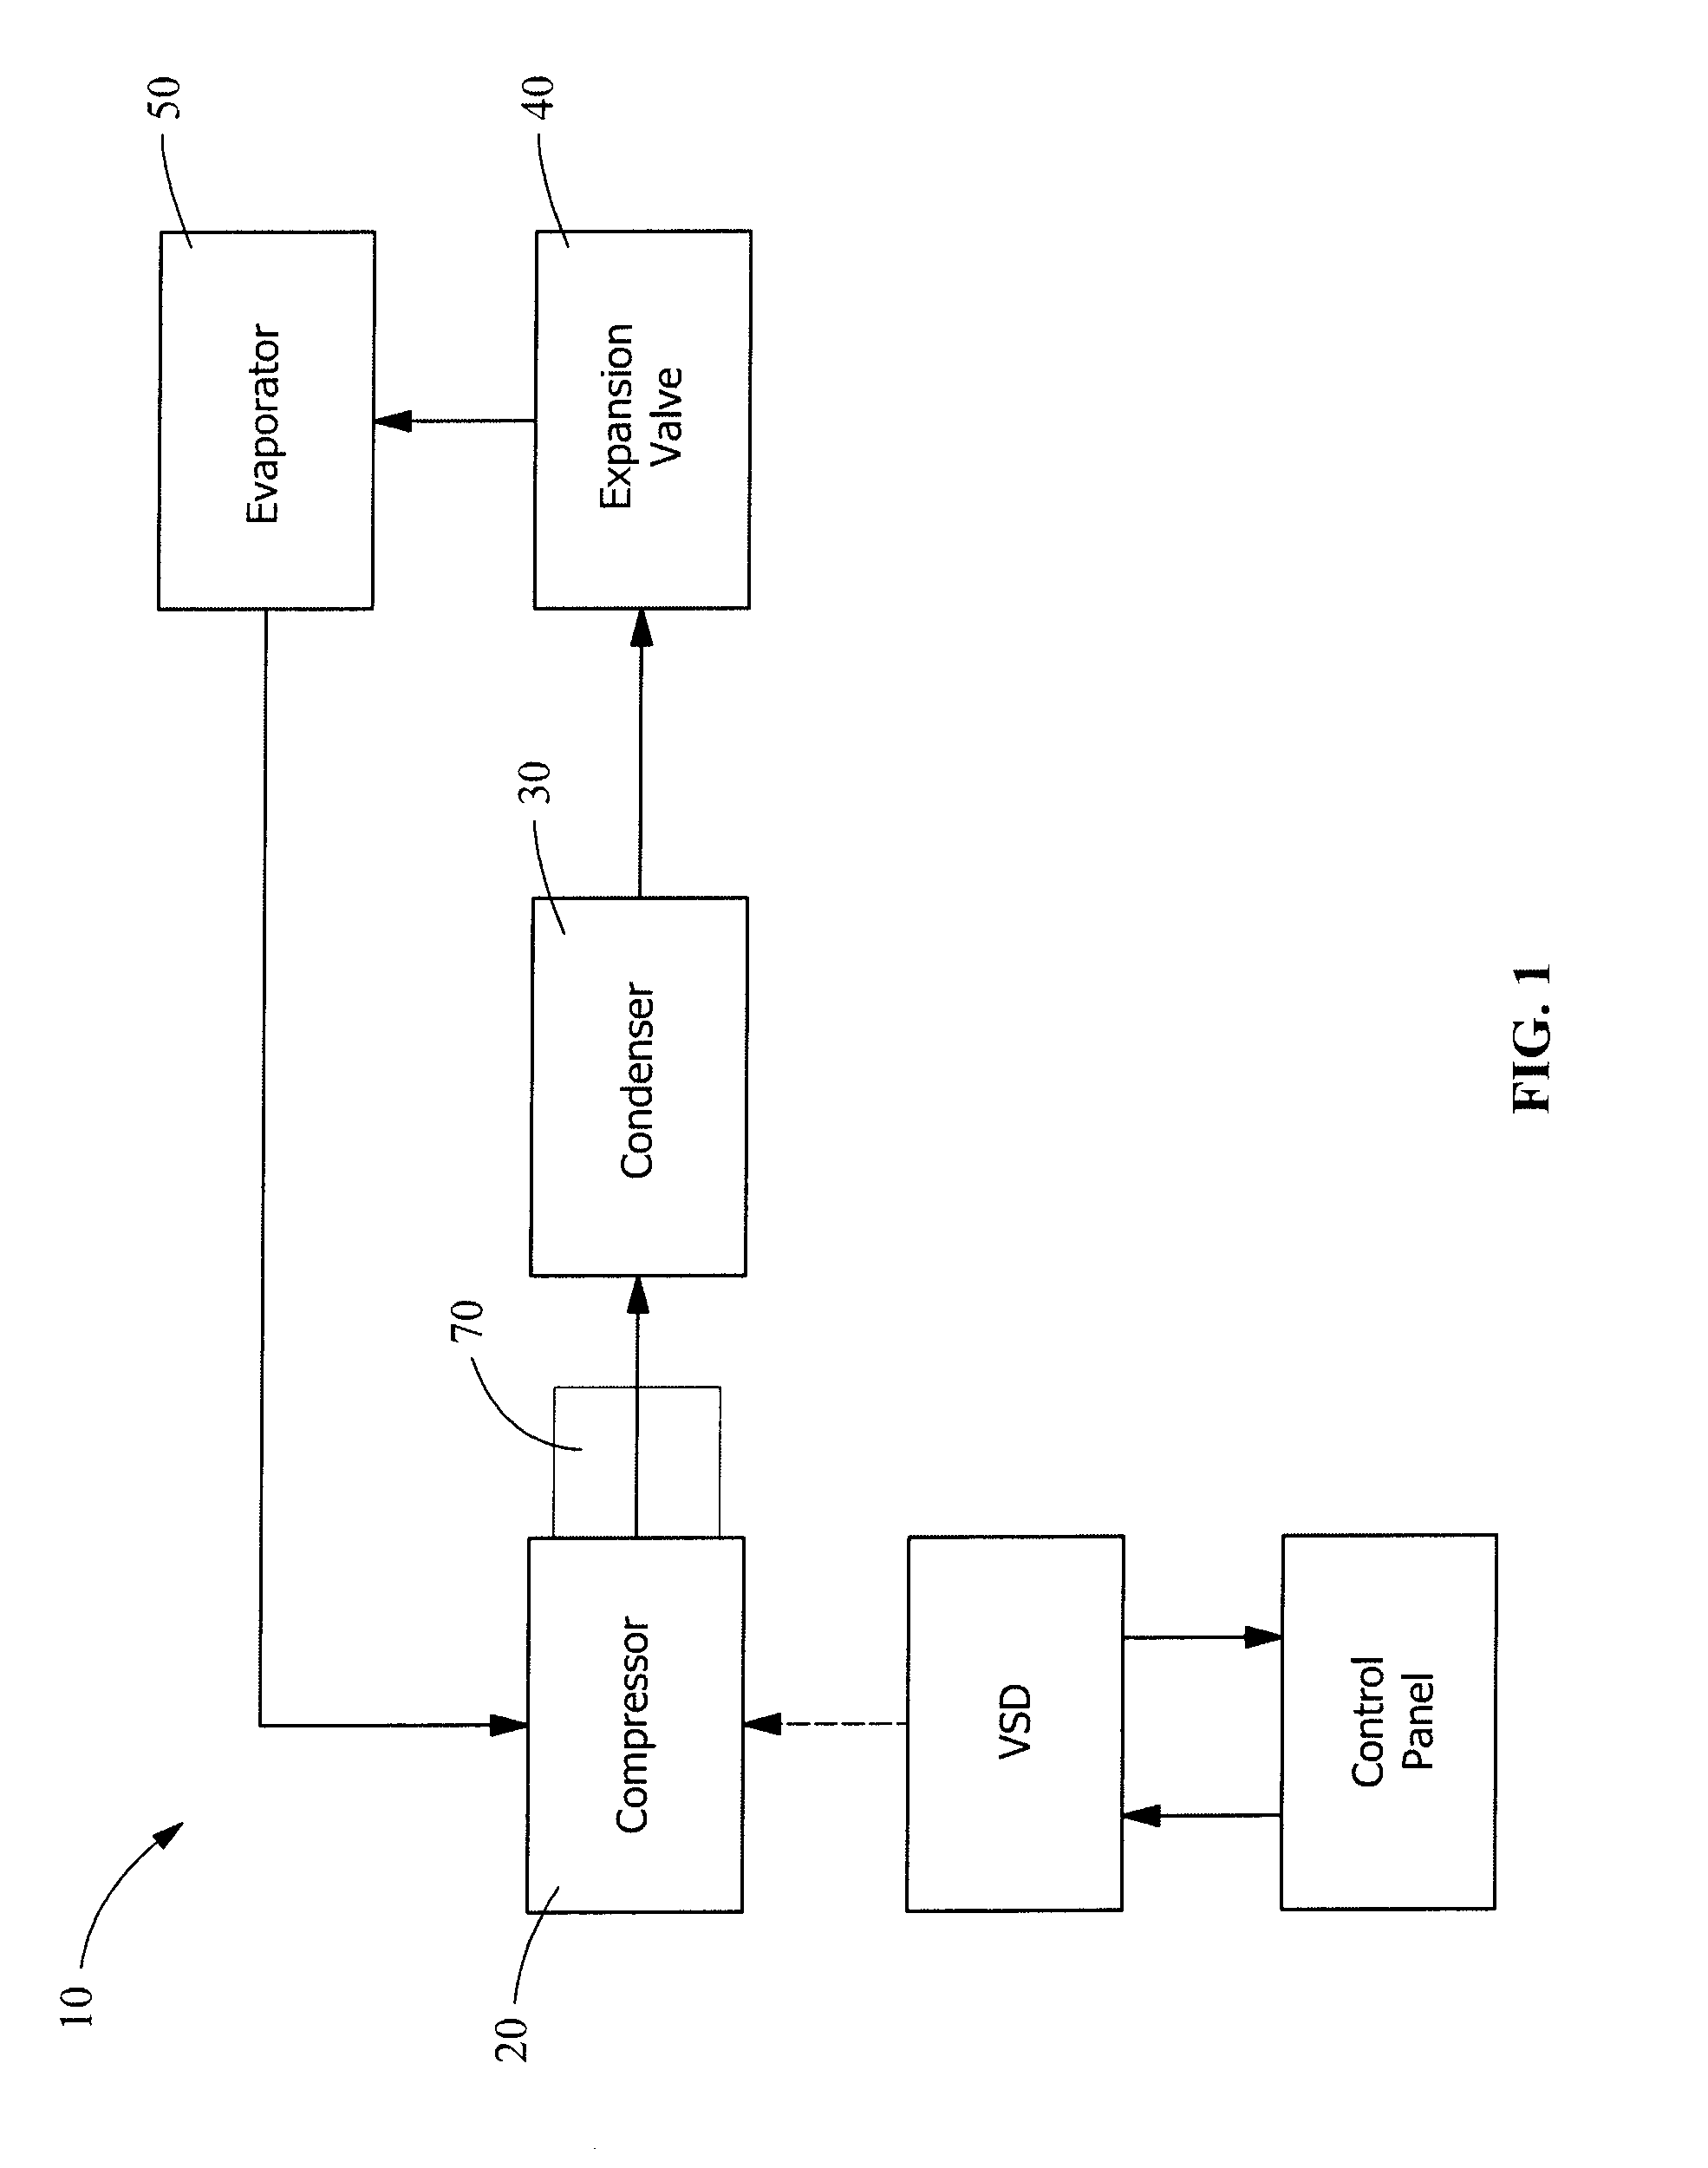 Motor cooling method for a compressor